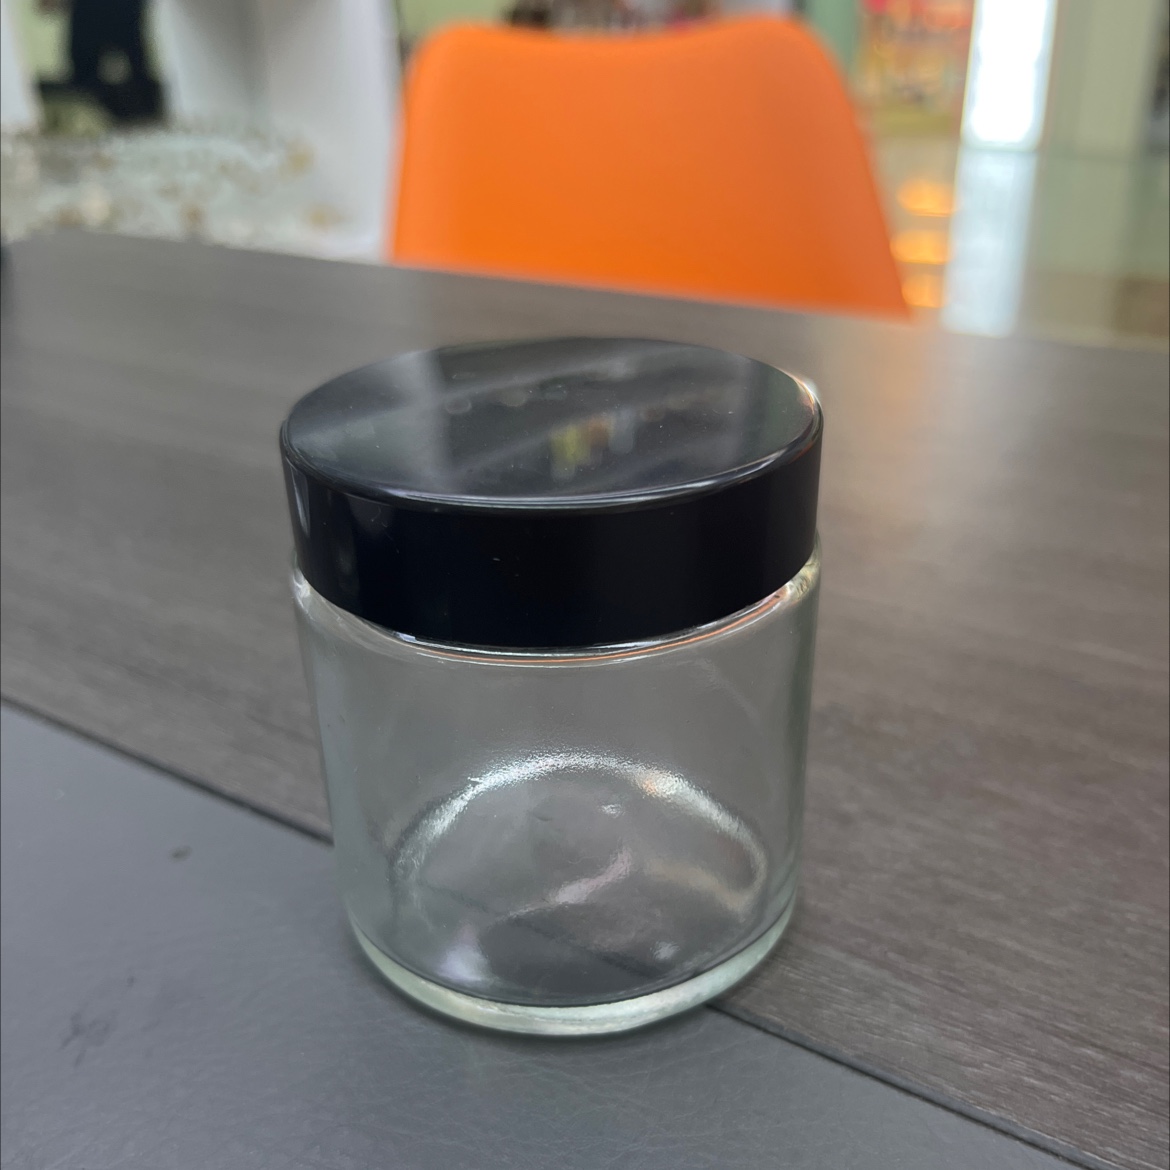 厚德玻璃厂 100毫升 膏霜瓶 透明玻璃瓶 黑色塑料盖子 